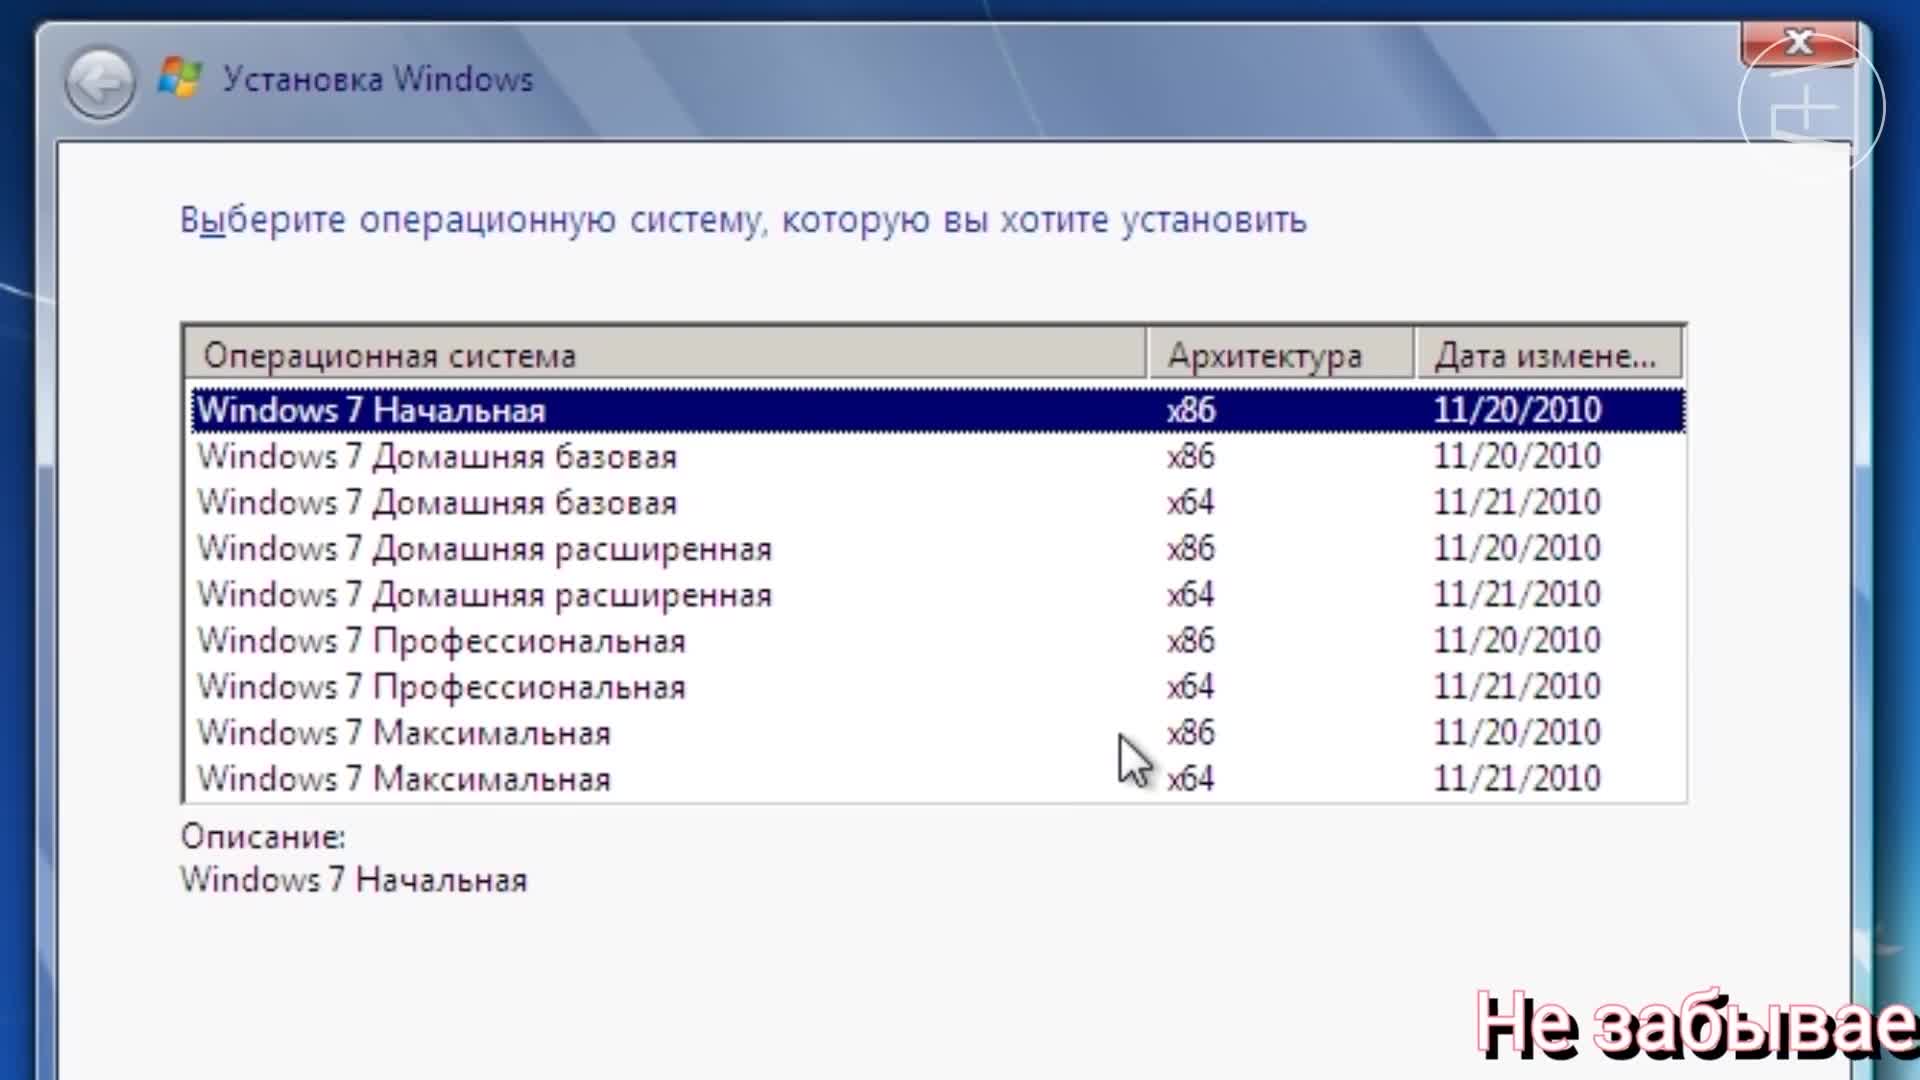 Понижение версии системы с Windows 8 Профессиональная до Windows 7 Профессиональная | Dell Сербия